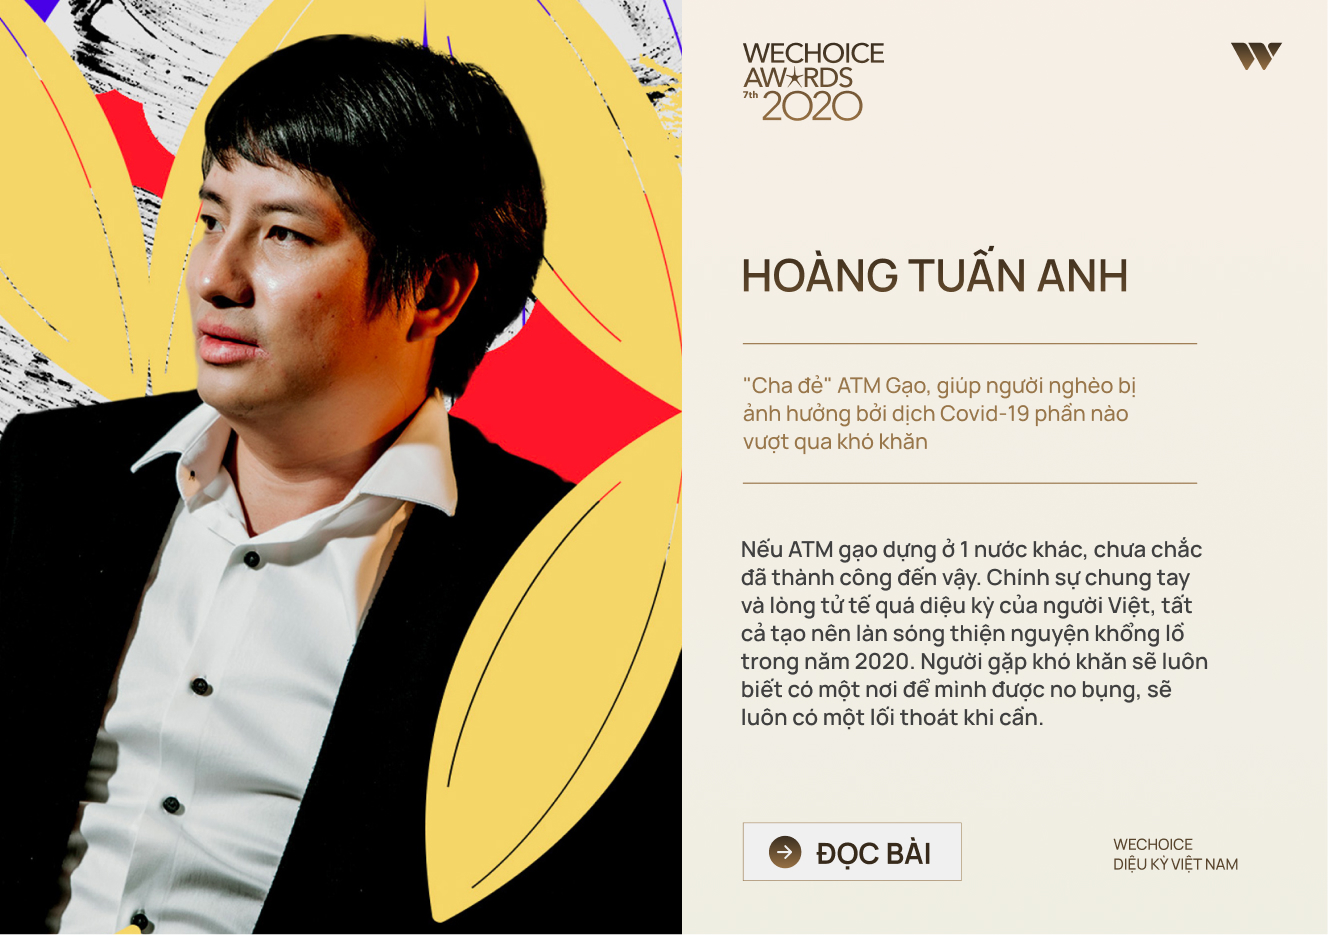 20 đề cử nhân vật truyền cảm hứng của WeChoice Awards 2020: Những câu chuyện tạo nên Diệu kỳ Việt Nam - Ảnh 2.